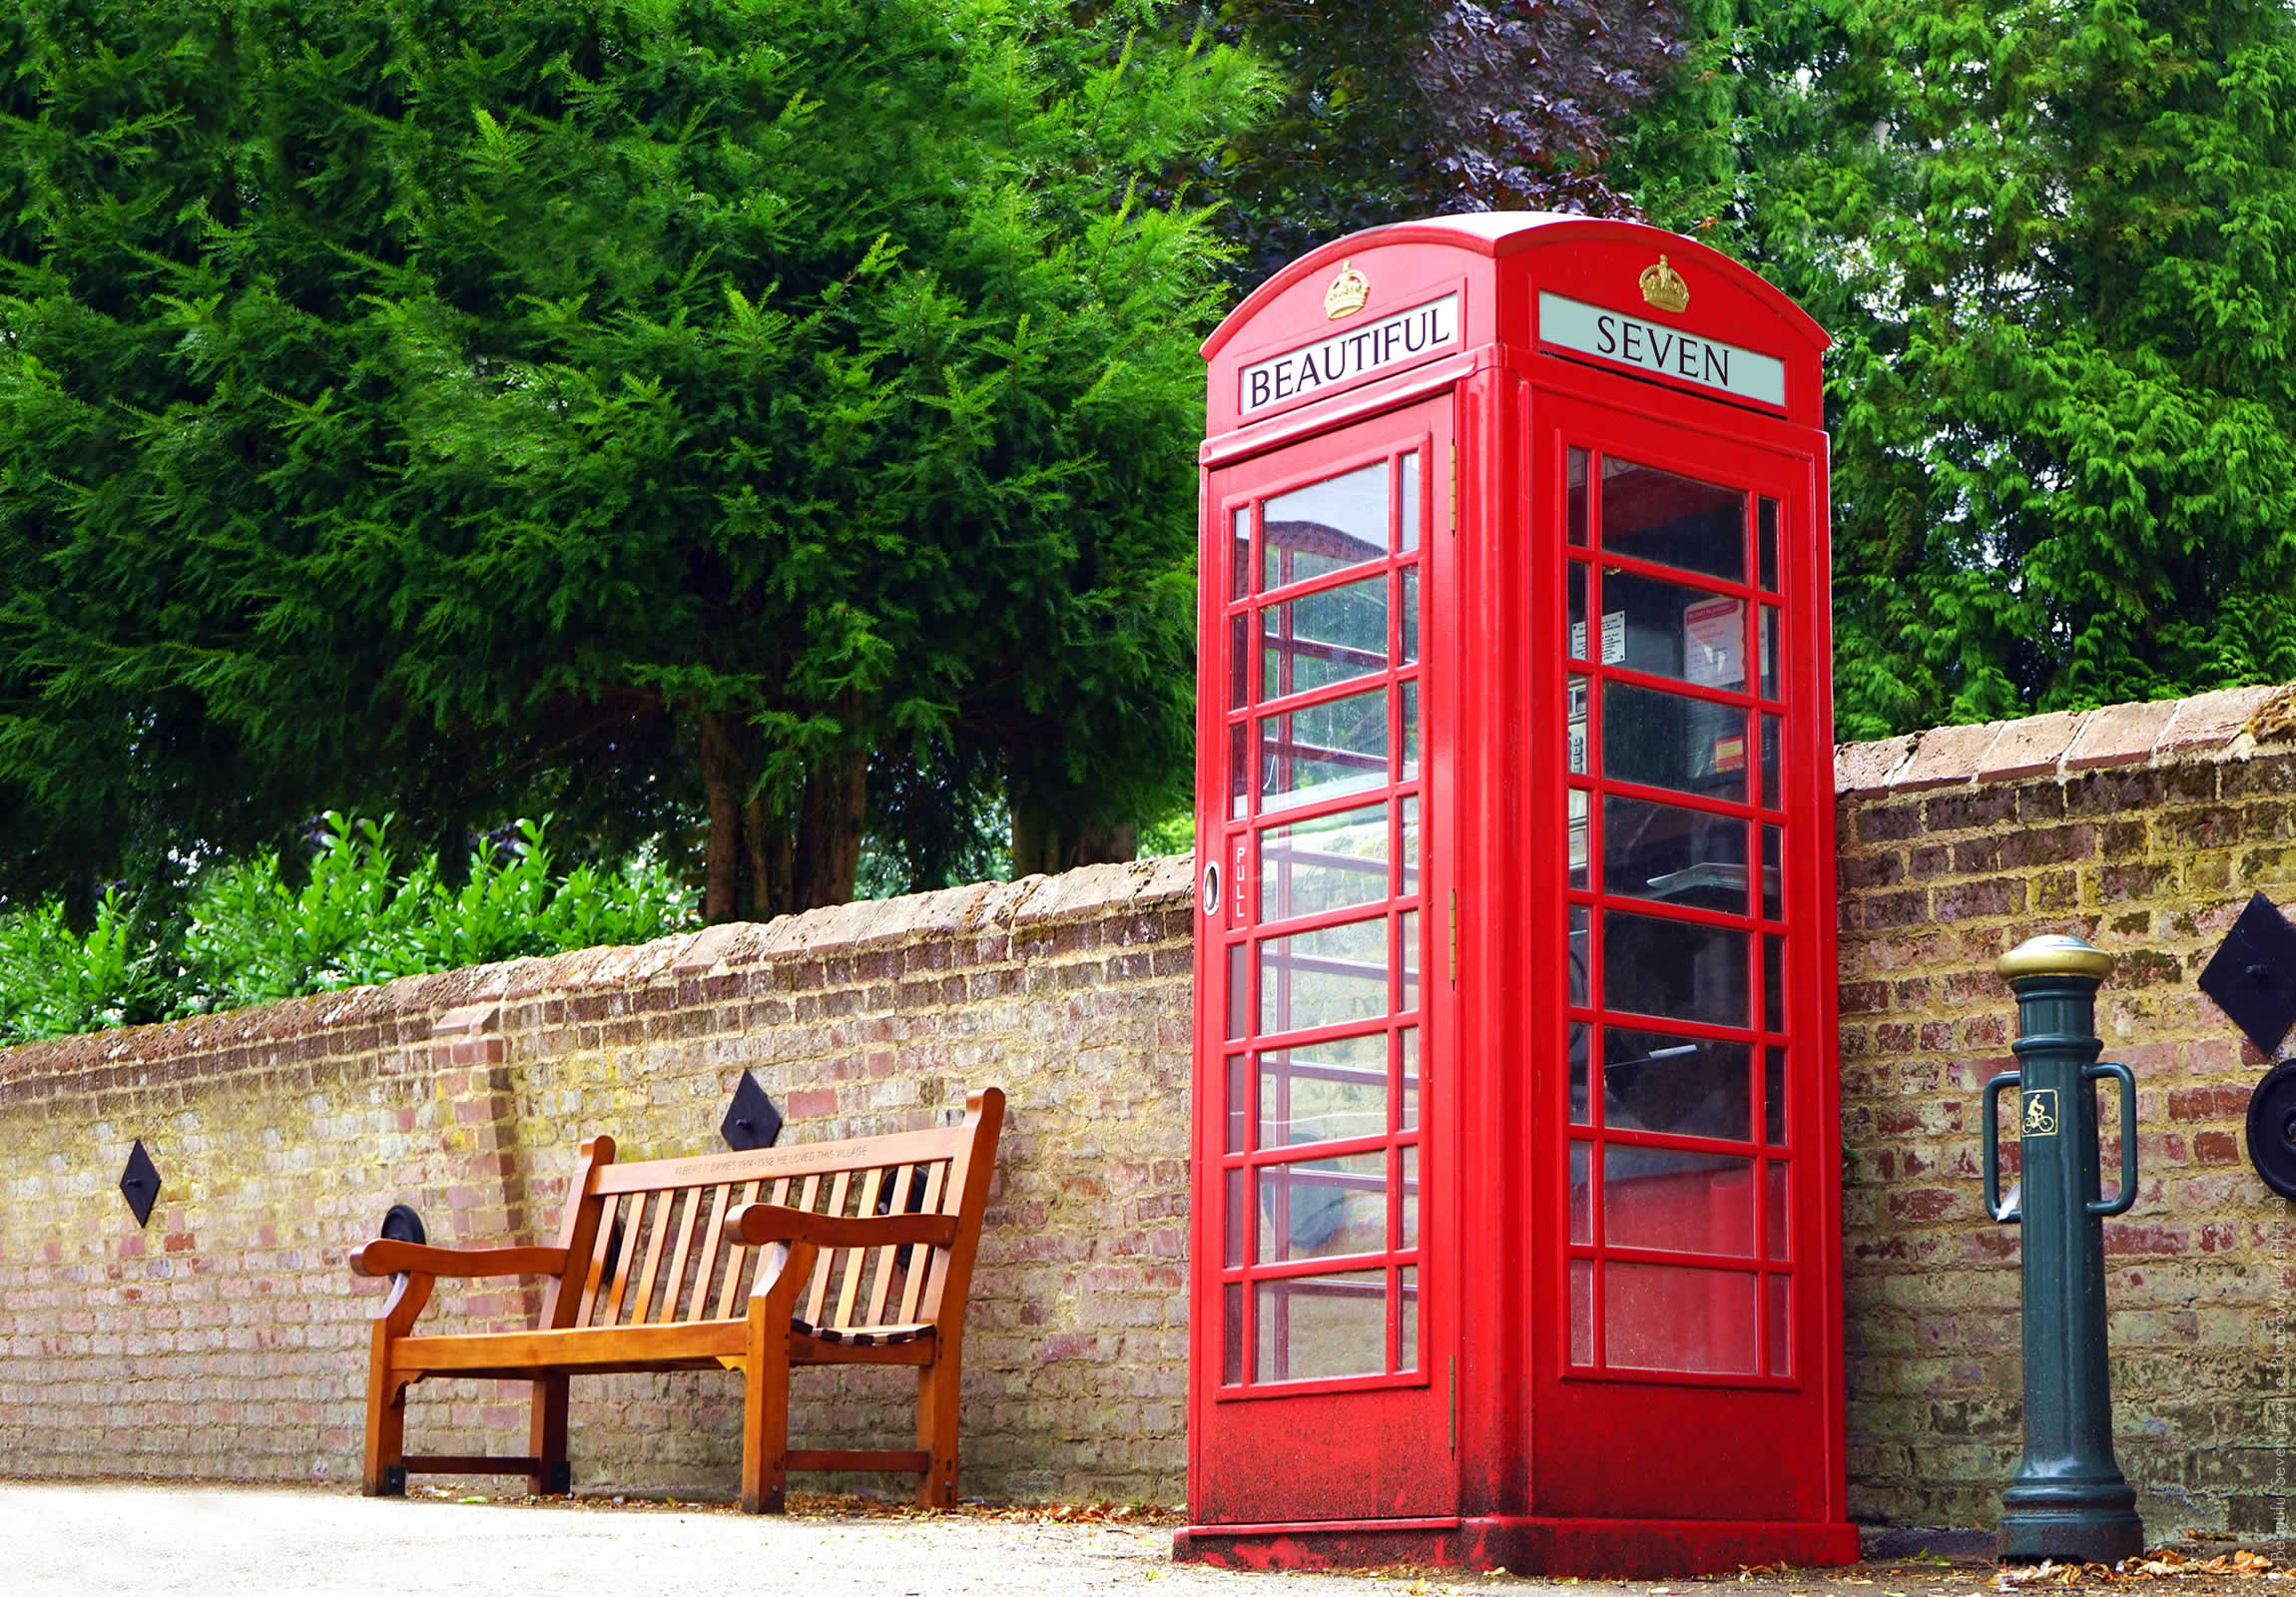 Beautiful Phone Box, la célèbre cabine téléphonique britanique ! Crédit : Brieuc Martin/Beautiful Seven